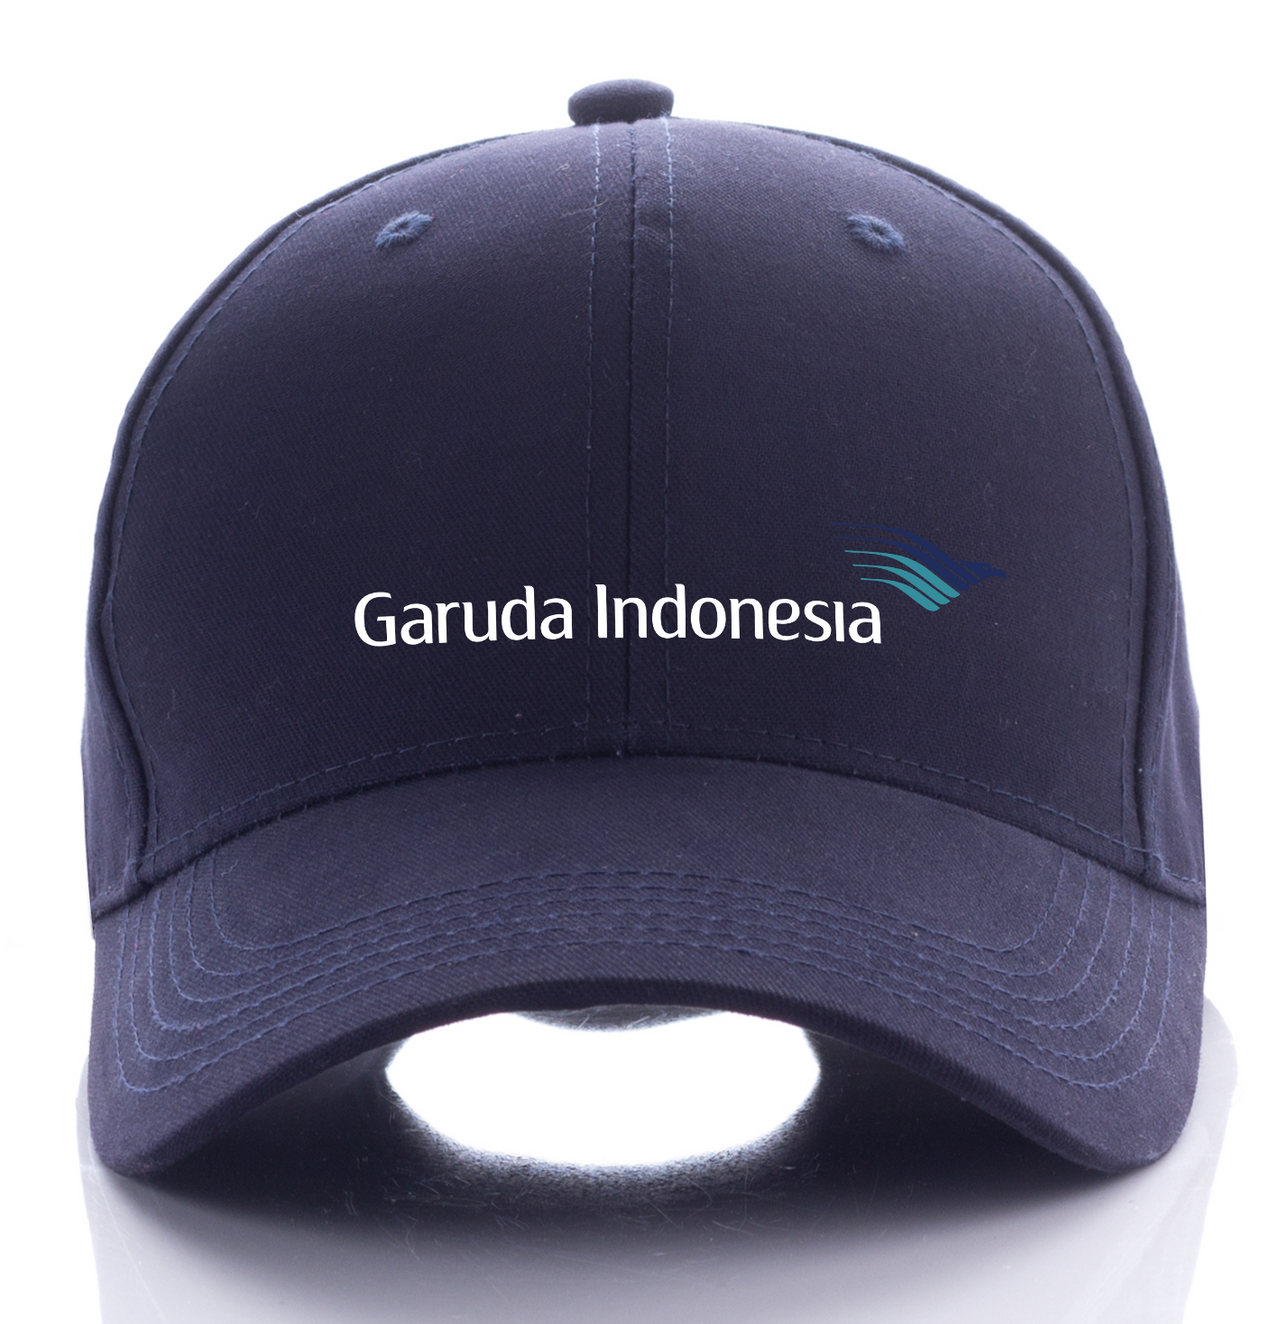 GURUDA INDONESIA AIRLINE DESIGNED CAP